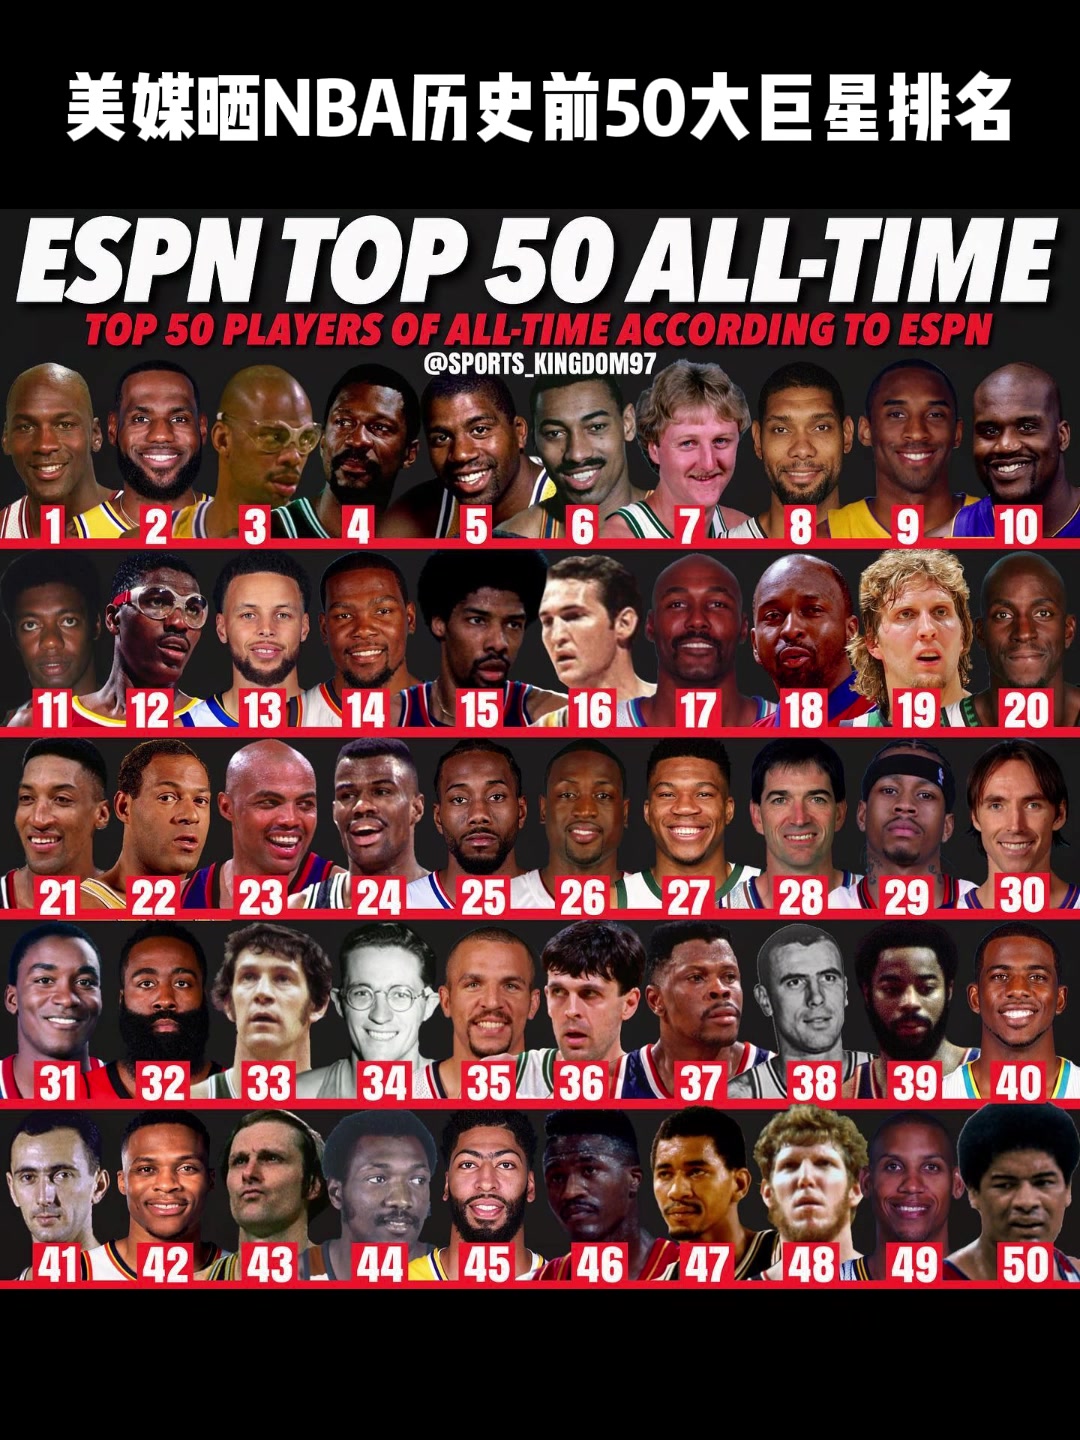 谁高了，谁低了？美媒晒NBA历史前50大巨星排名：老詹第2、科比第9、库里第1